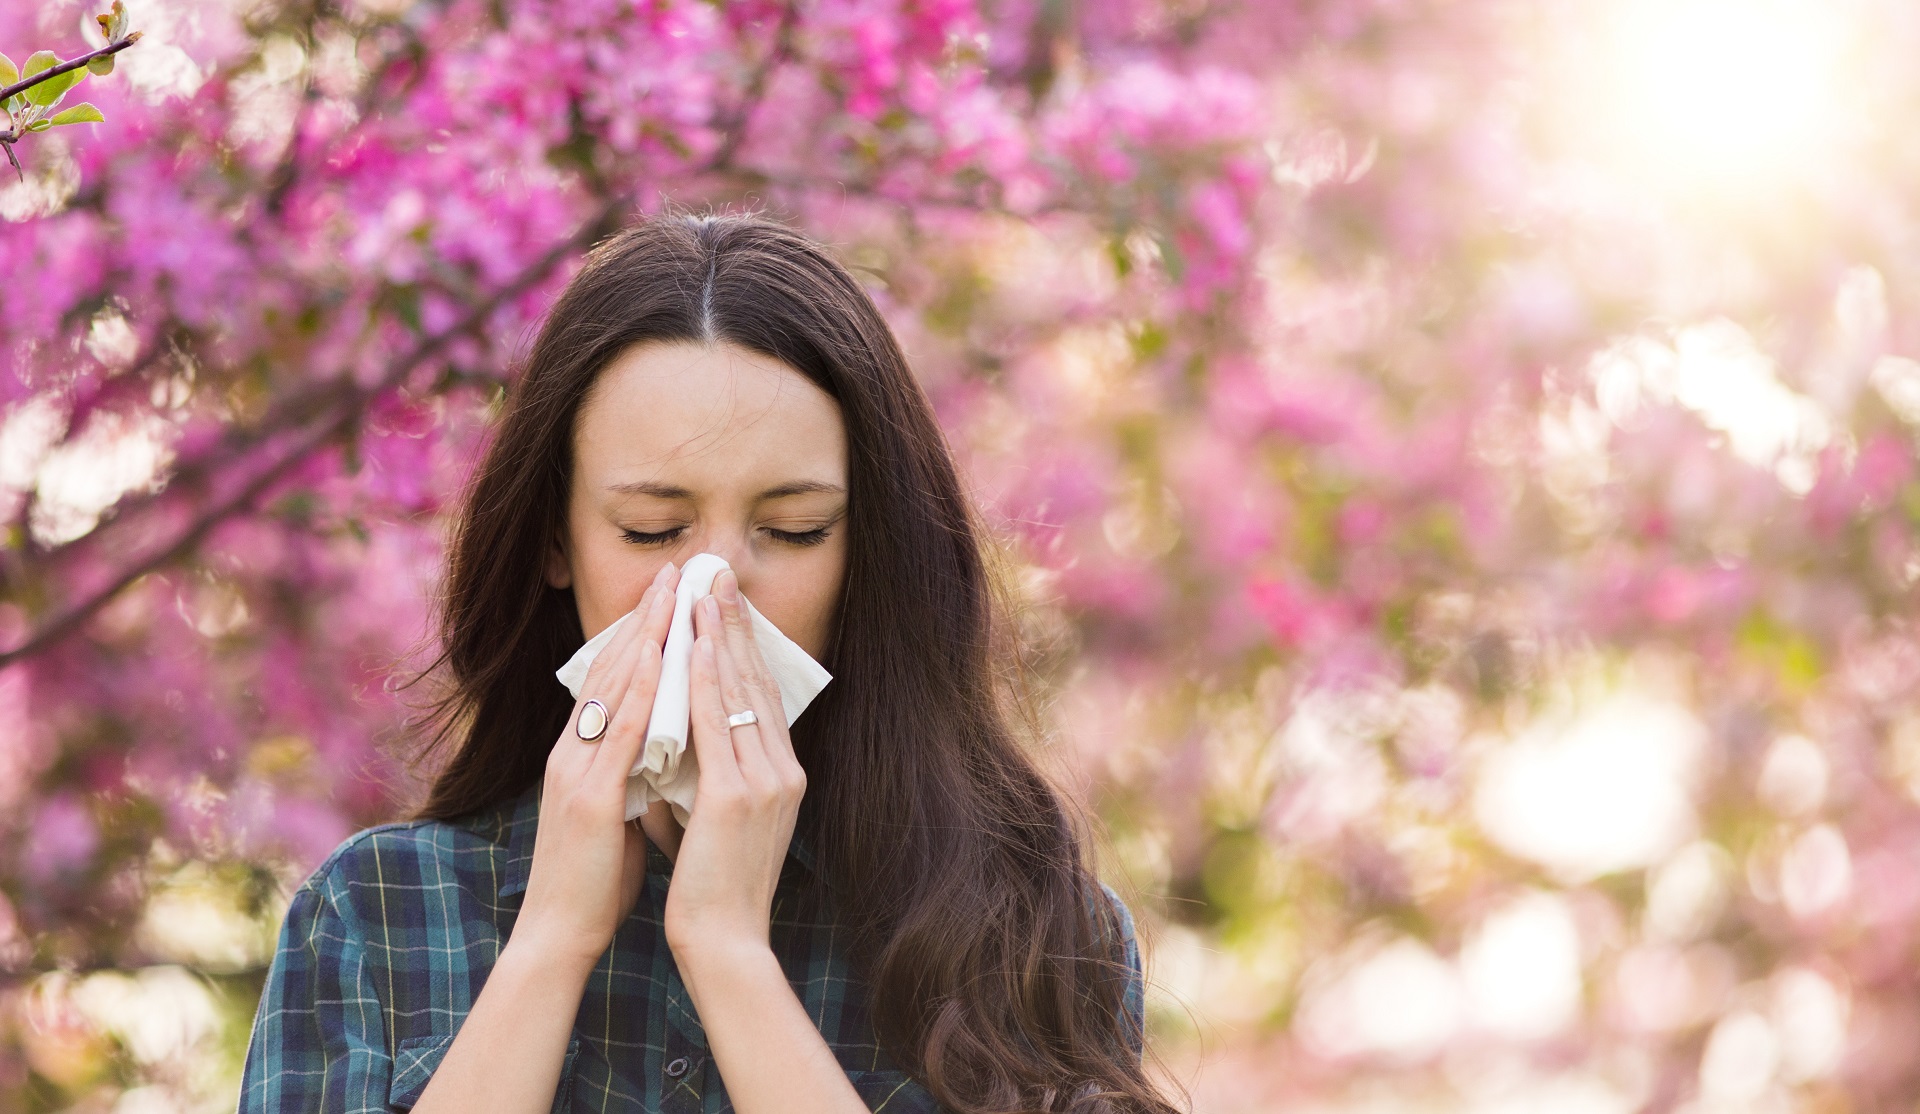 Allergiediagnostik - Empfehlungen, Fallstricke und Fallbeispiele